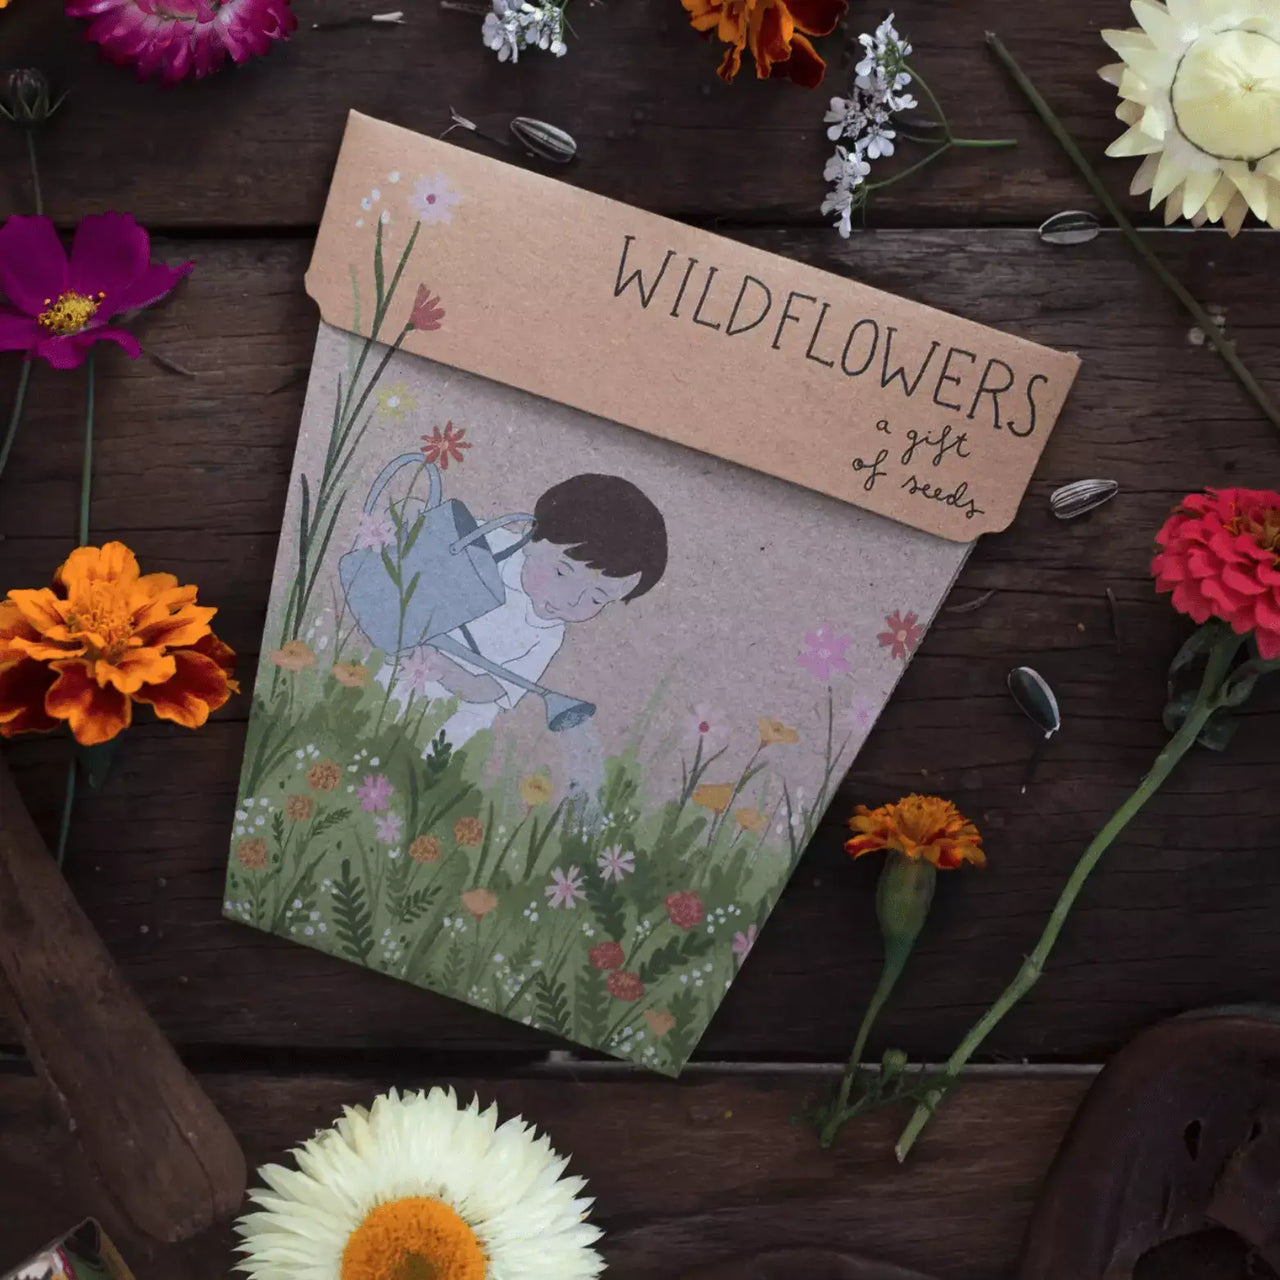 Sow n Sow Seeds - Sow n Sow Wildflowers kit - Sow n Sow Wildflowers kit - Sow n Sow Wildflowers kit - Sow n Sow Wildflowers kit - Sow n Sow Wildflowers kit -.